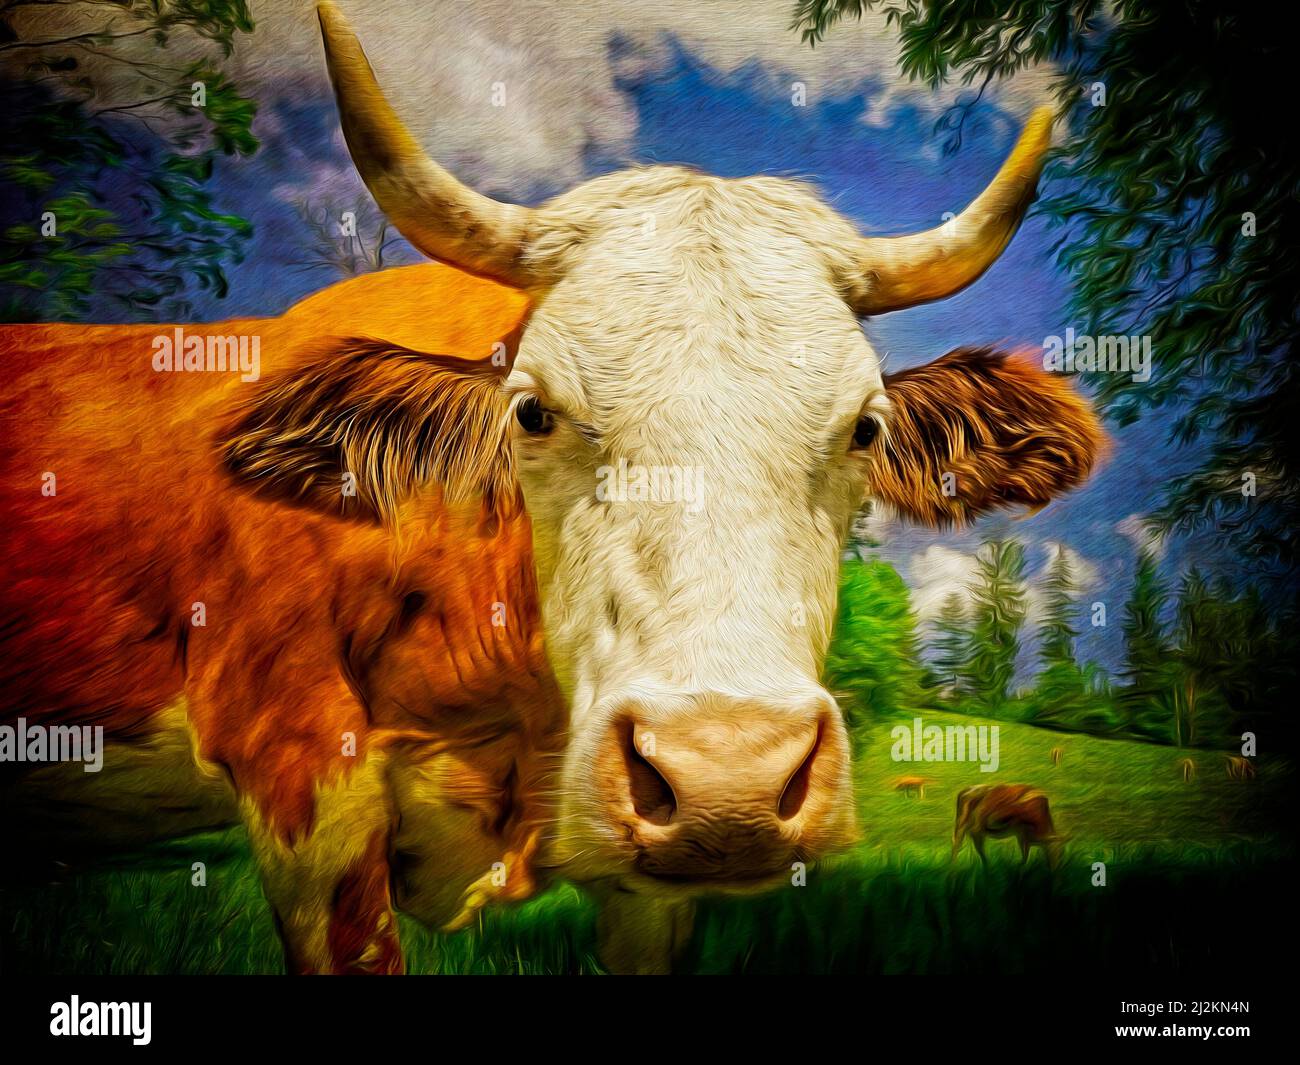 CONTEMPORARY ART: 'Cow Do You Do' by Edmund Nagele F.R.P.S. Stock Photo